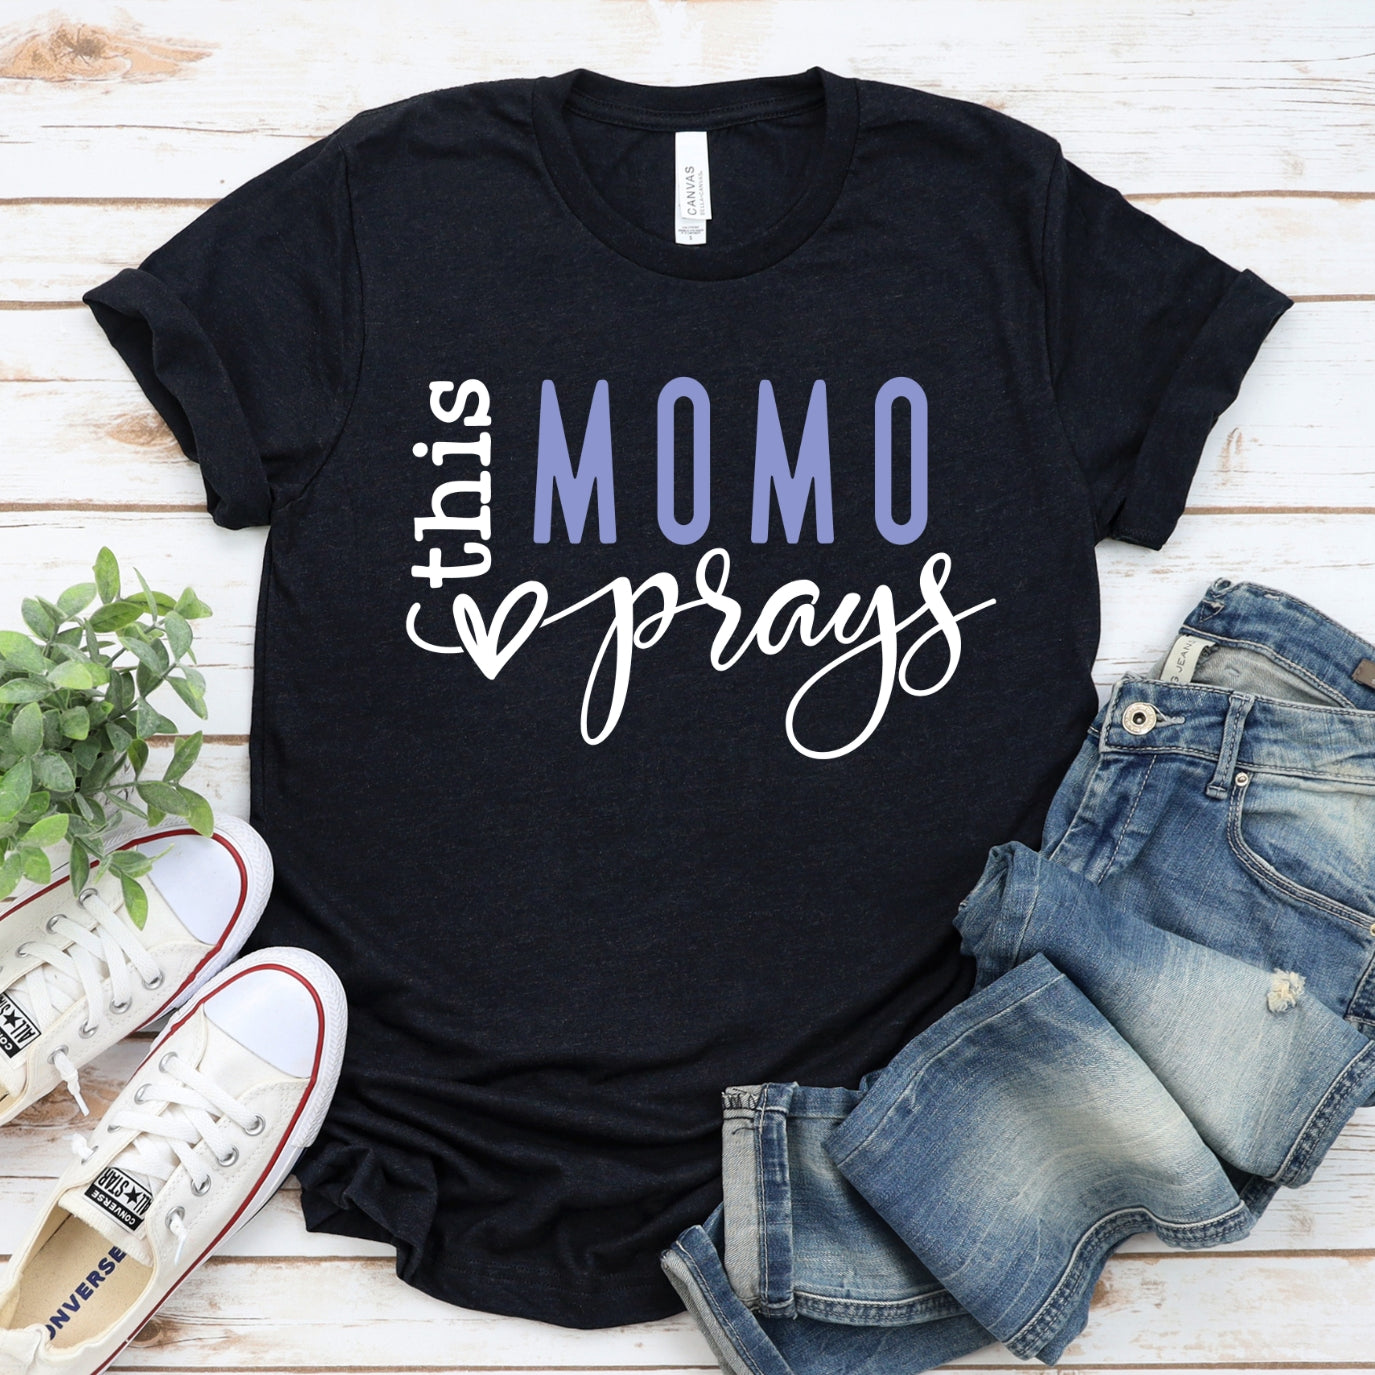 This MoMo Prays Women's T-Shirt